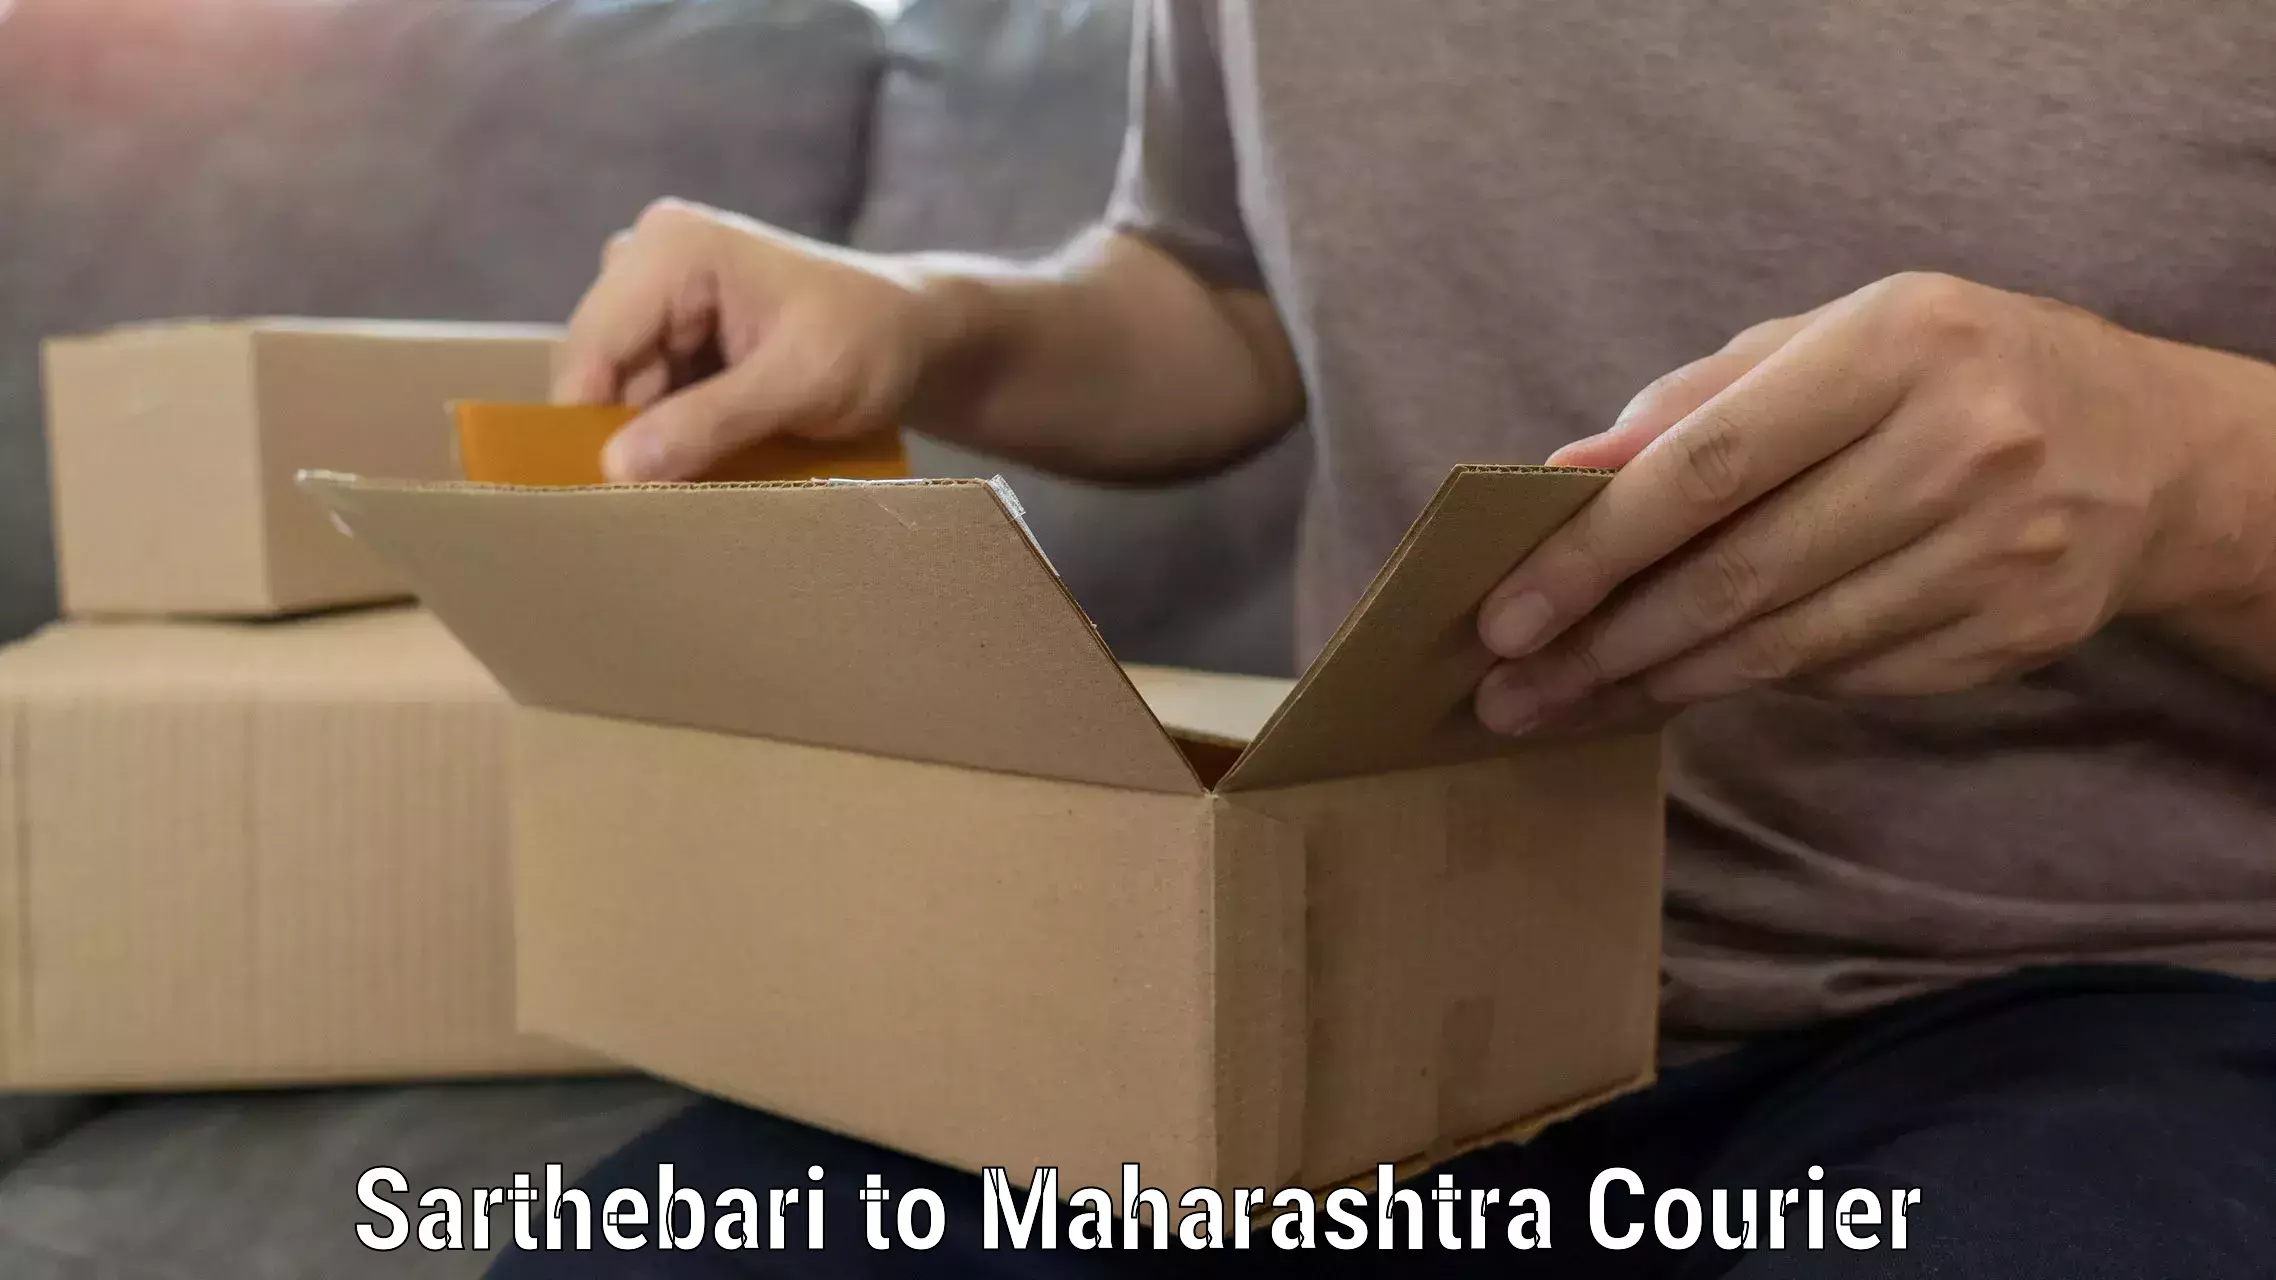 Full-service relocation Sarthebari to Maharashtra